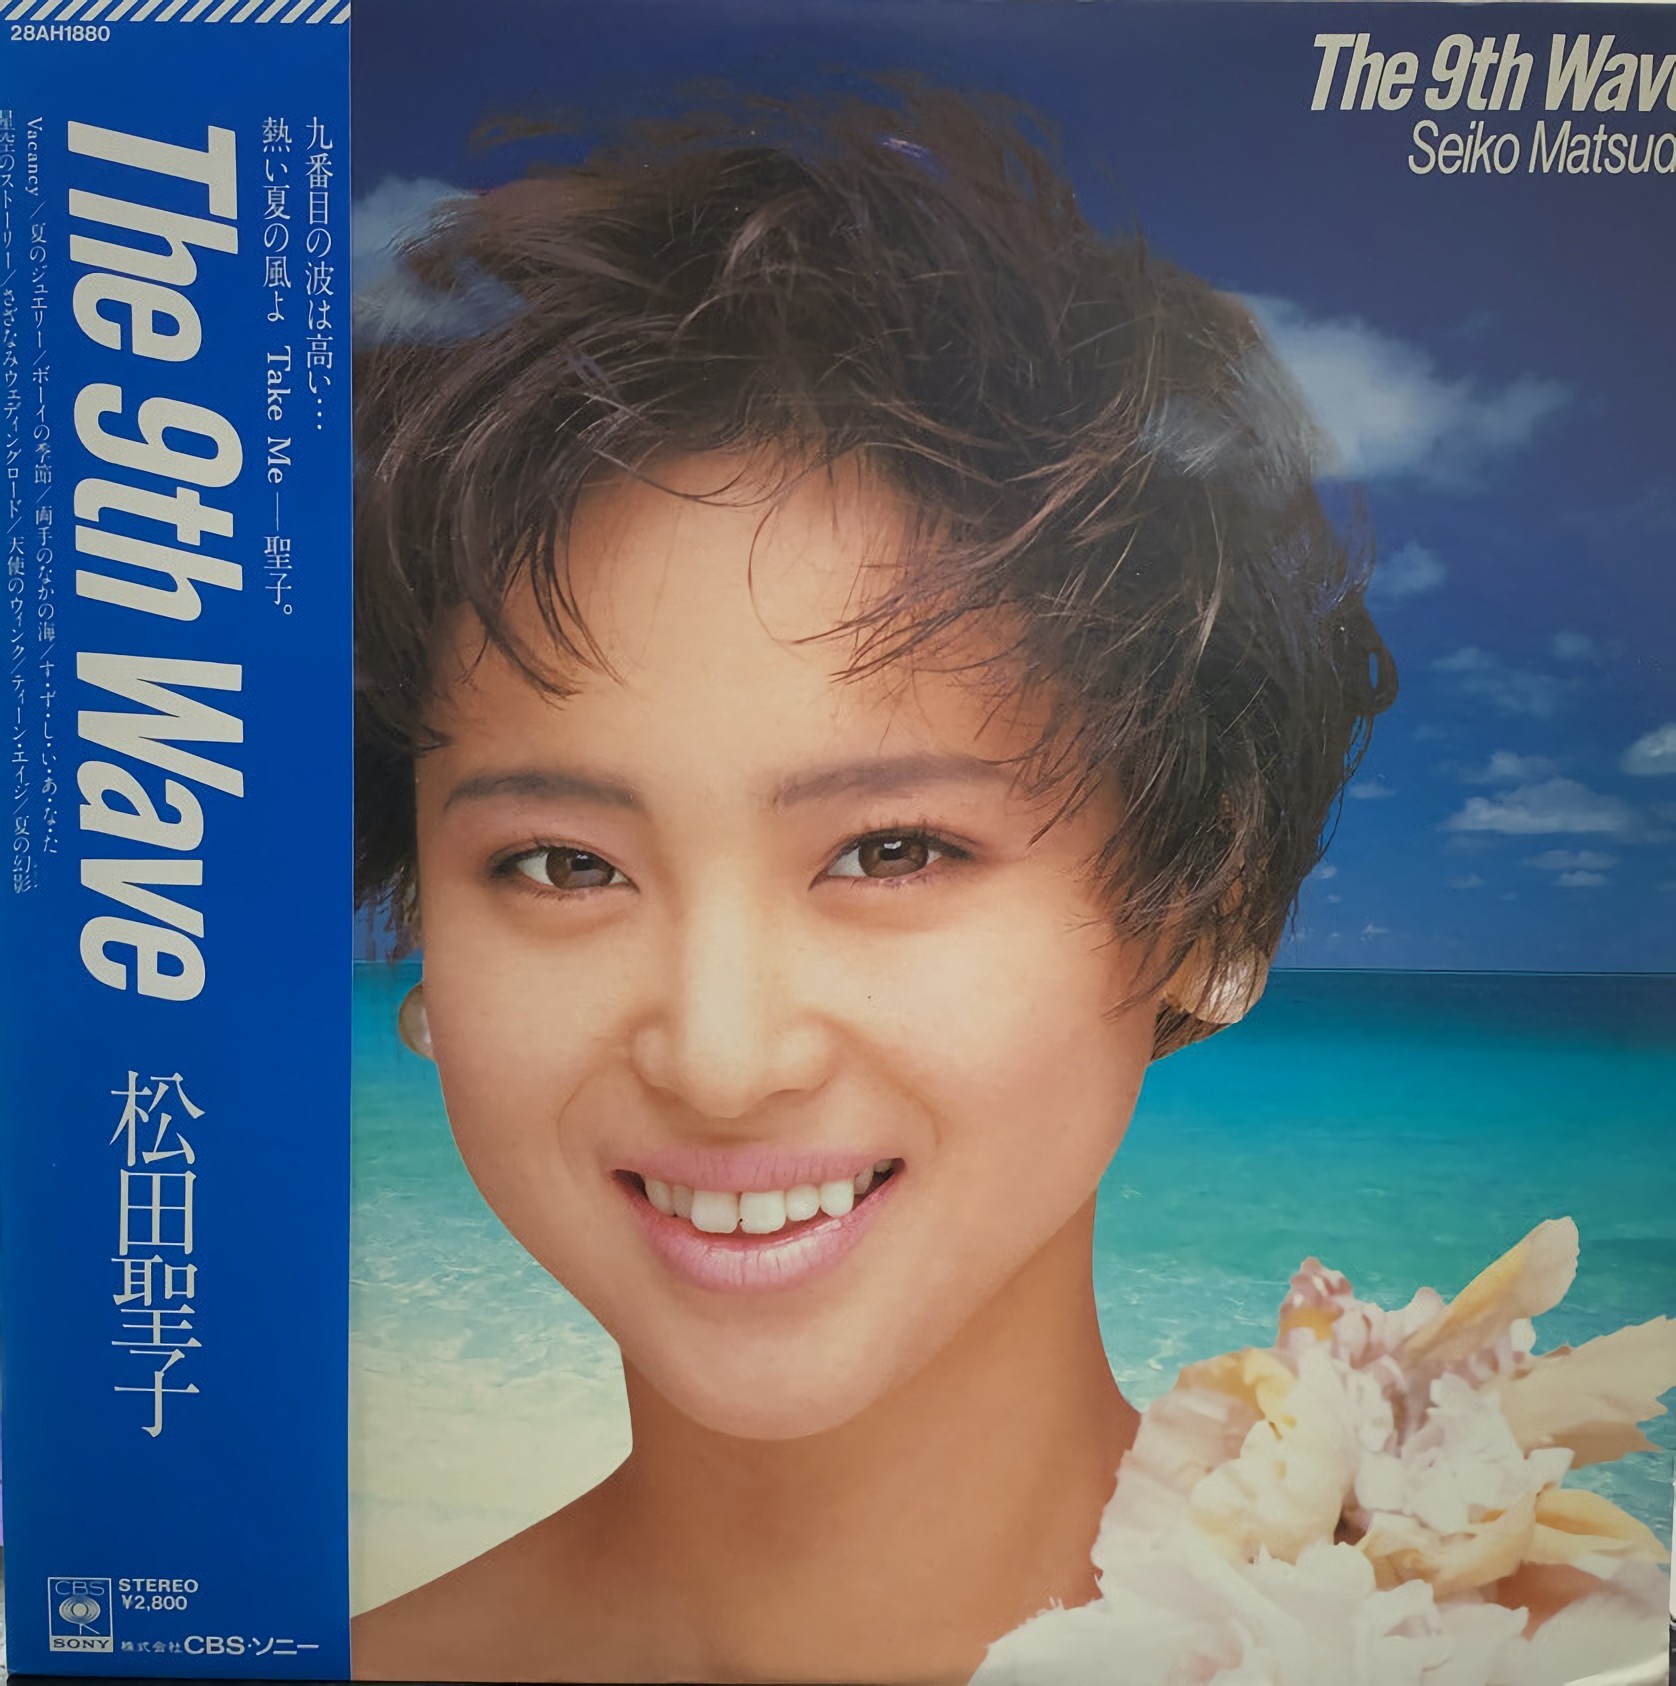 松田聖子 (Seiko Matsuda) – The 9th Wave [FLAC / 24bit Lossless / WEB] [1985.06.05]